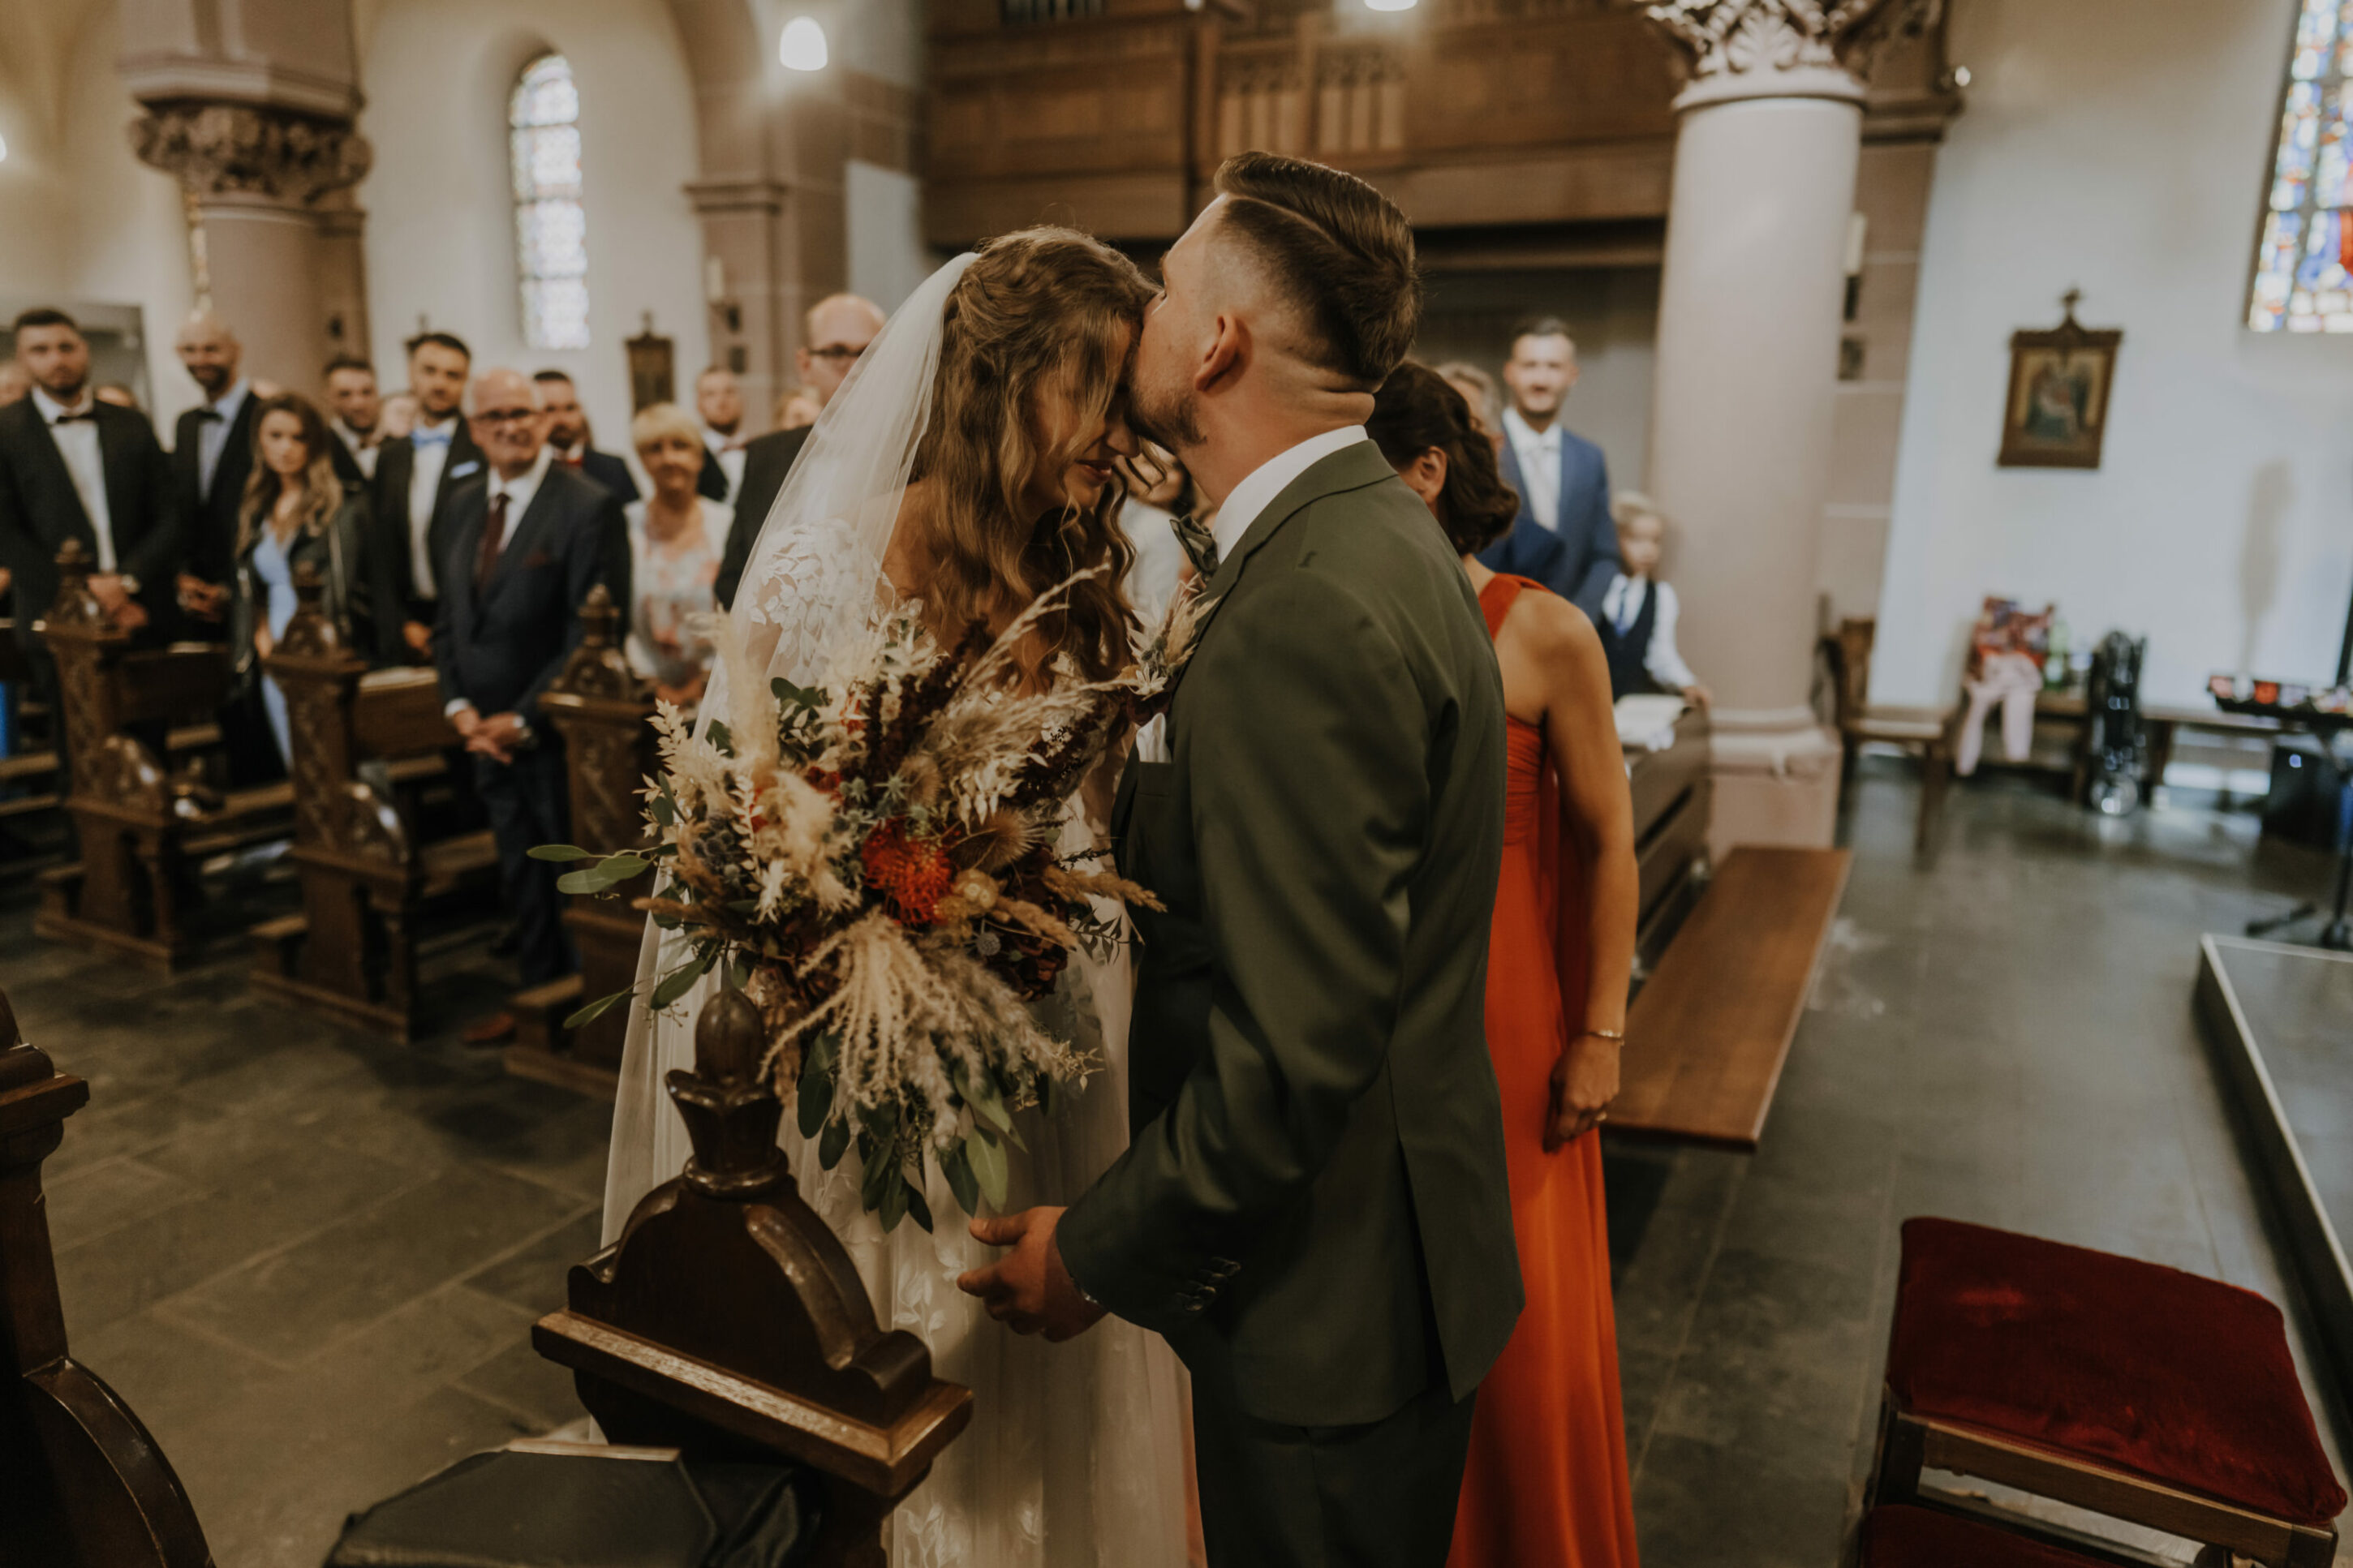 Hochzeitsreportage über die emotionale Trauung in der St. Hubertus Kirche in Pulheim von Diana und Robin